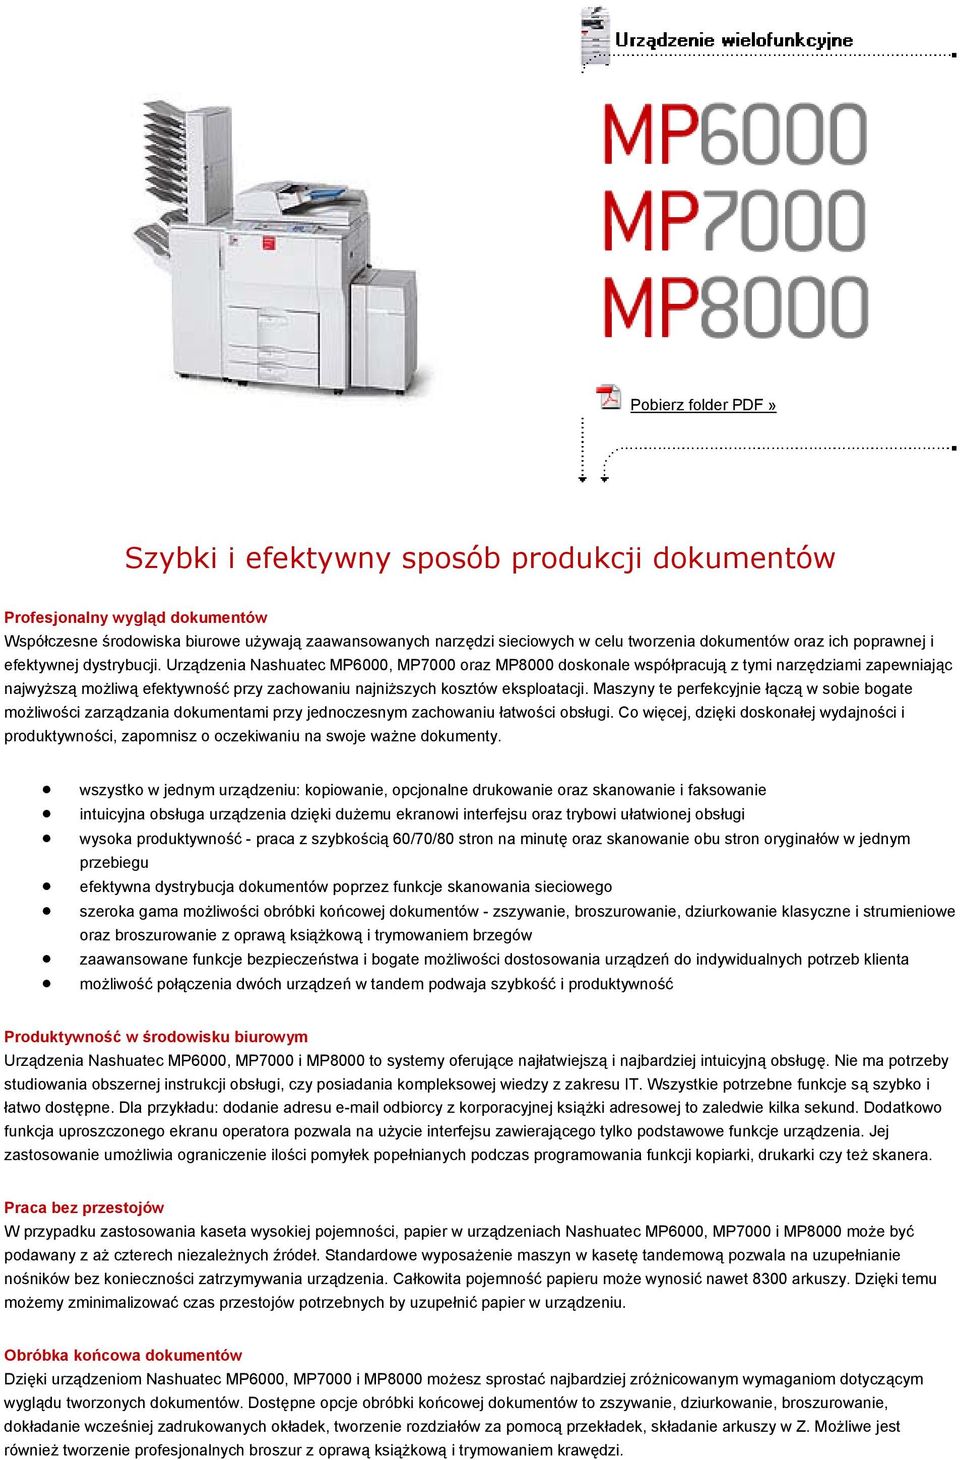 Urządzenia Nashuatec MP6000, MP7000 oraz MP8000 doskonale współpracują z tymi narzędziami zapewniając najwyższą możliwą efektywność przy zachowaniu najniższych kosztów eksploatacji.